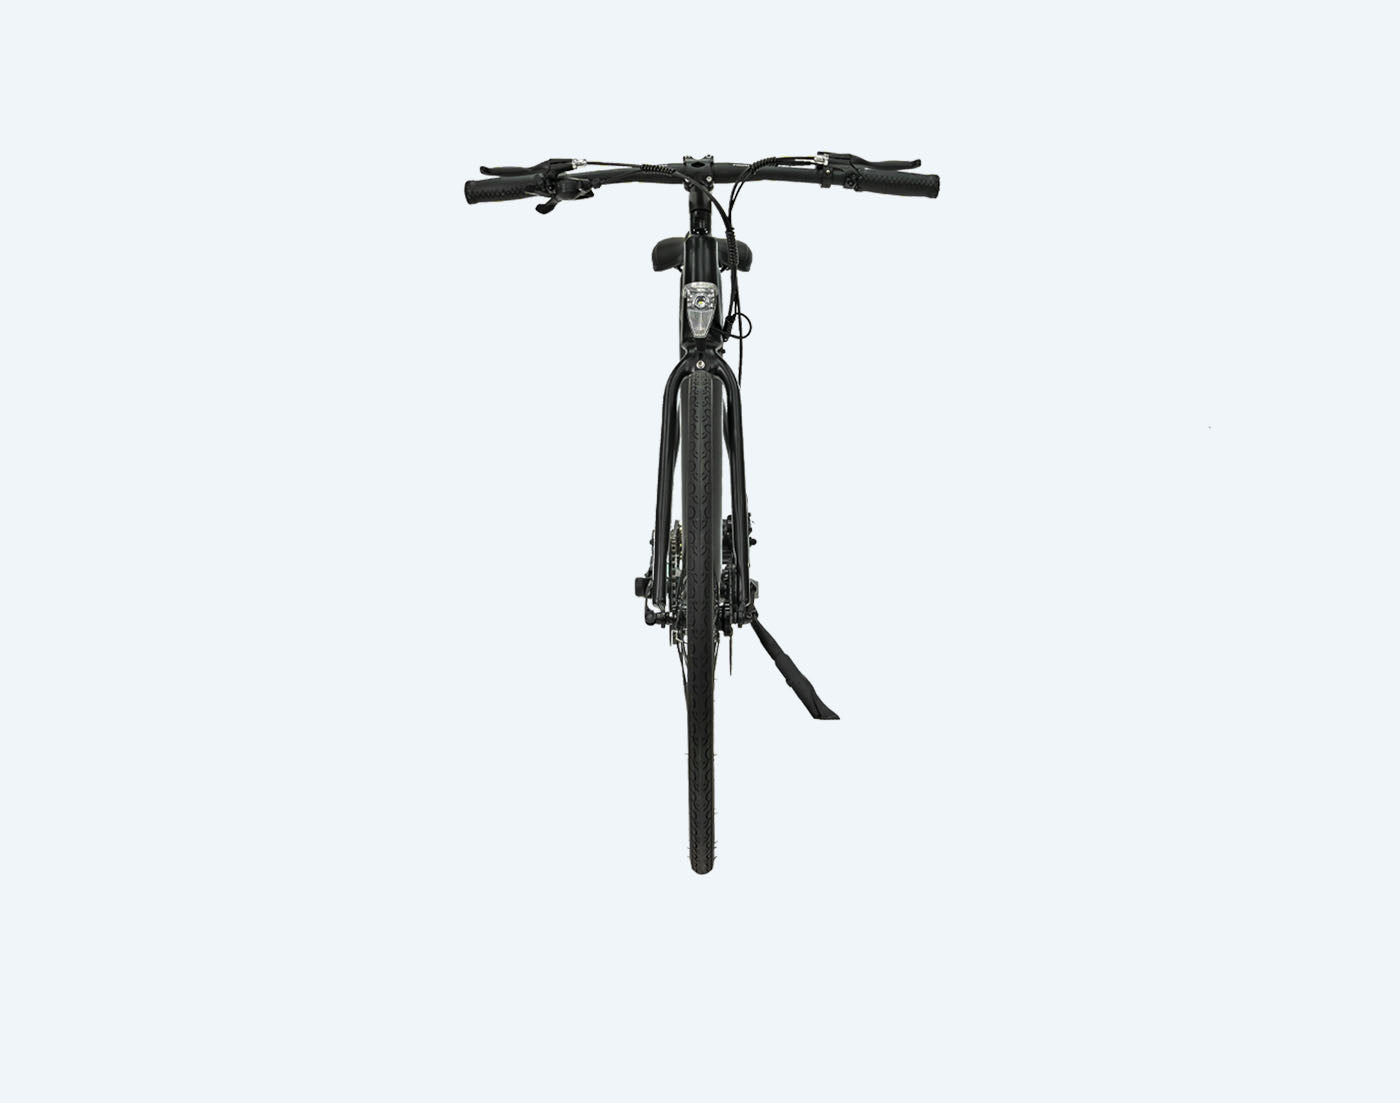 Bicicletta elettrica per pendolari Rymic Infinity 3